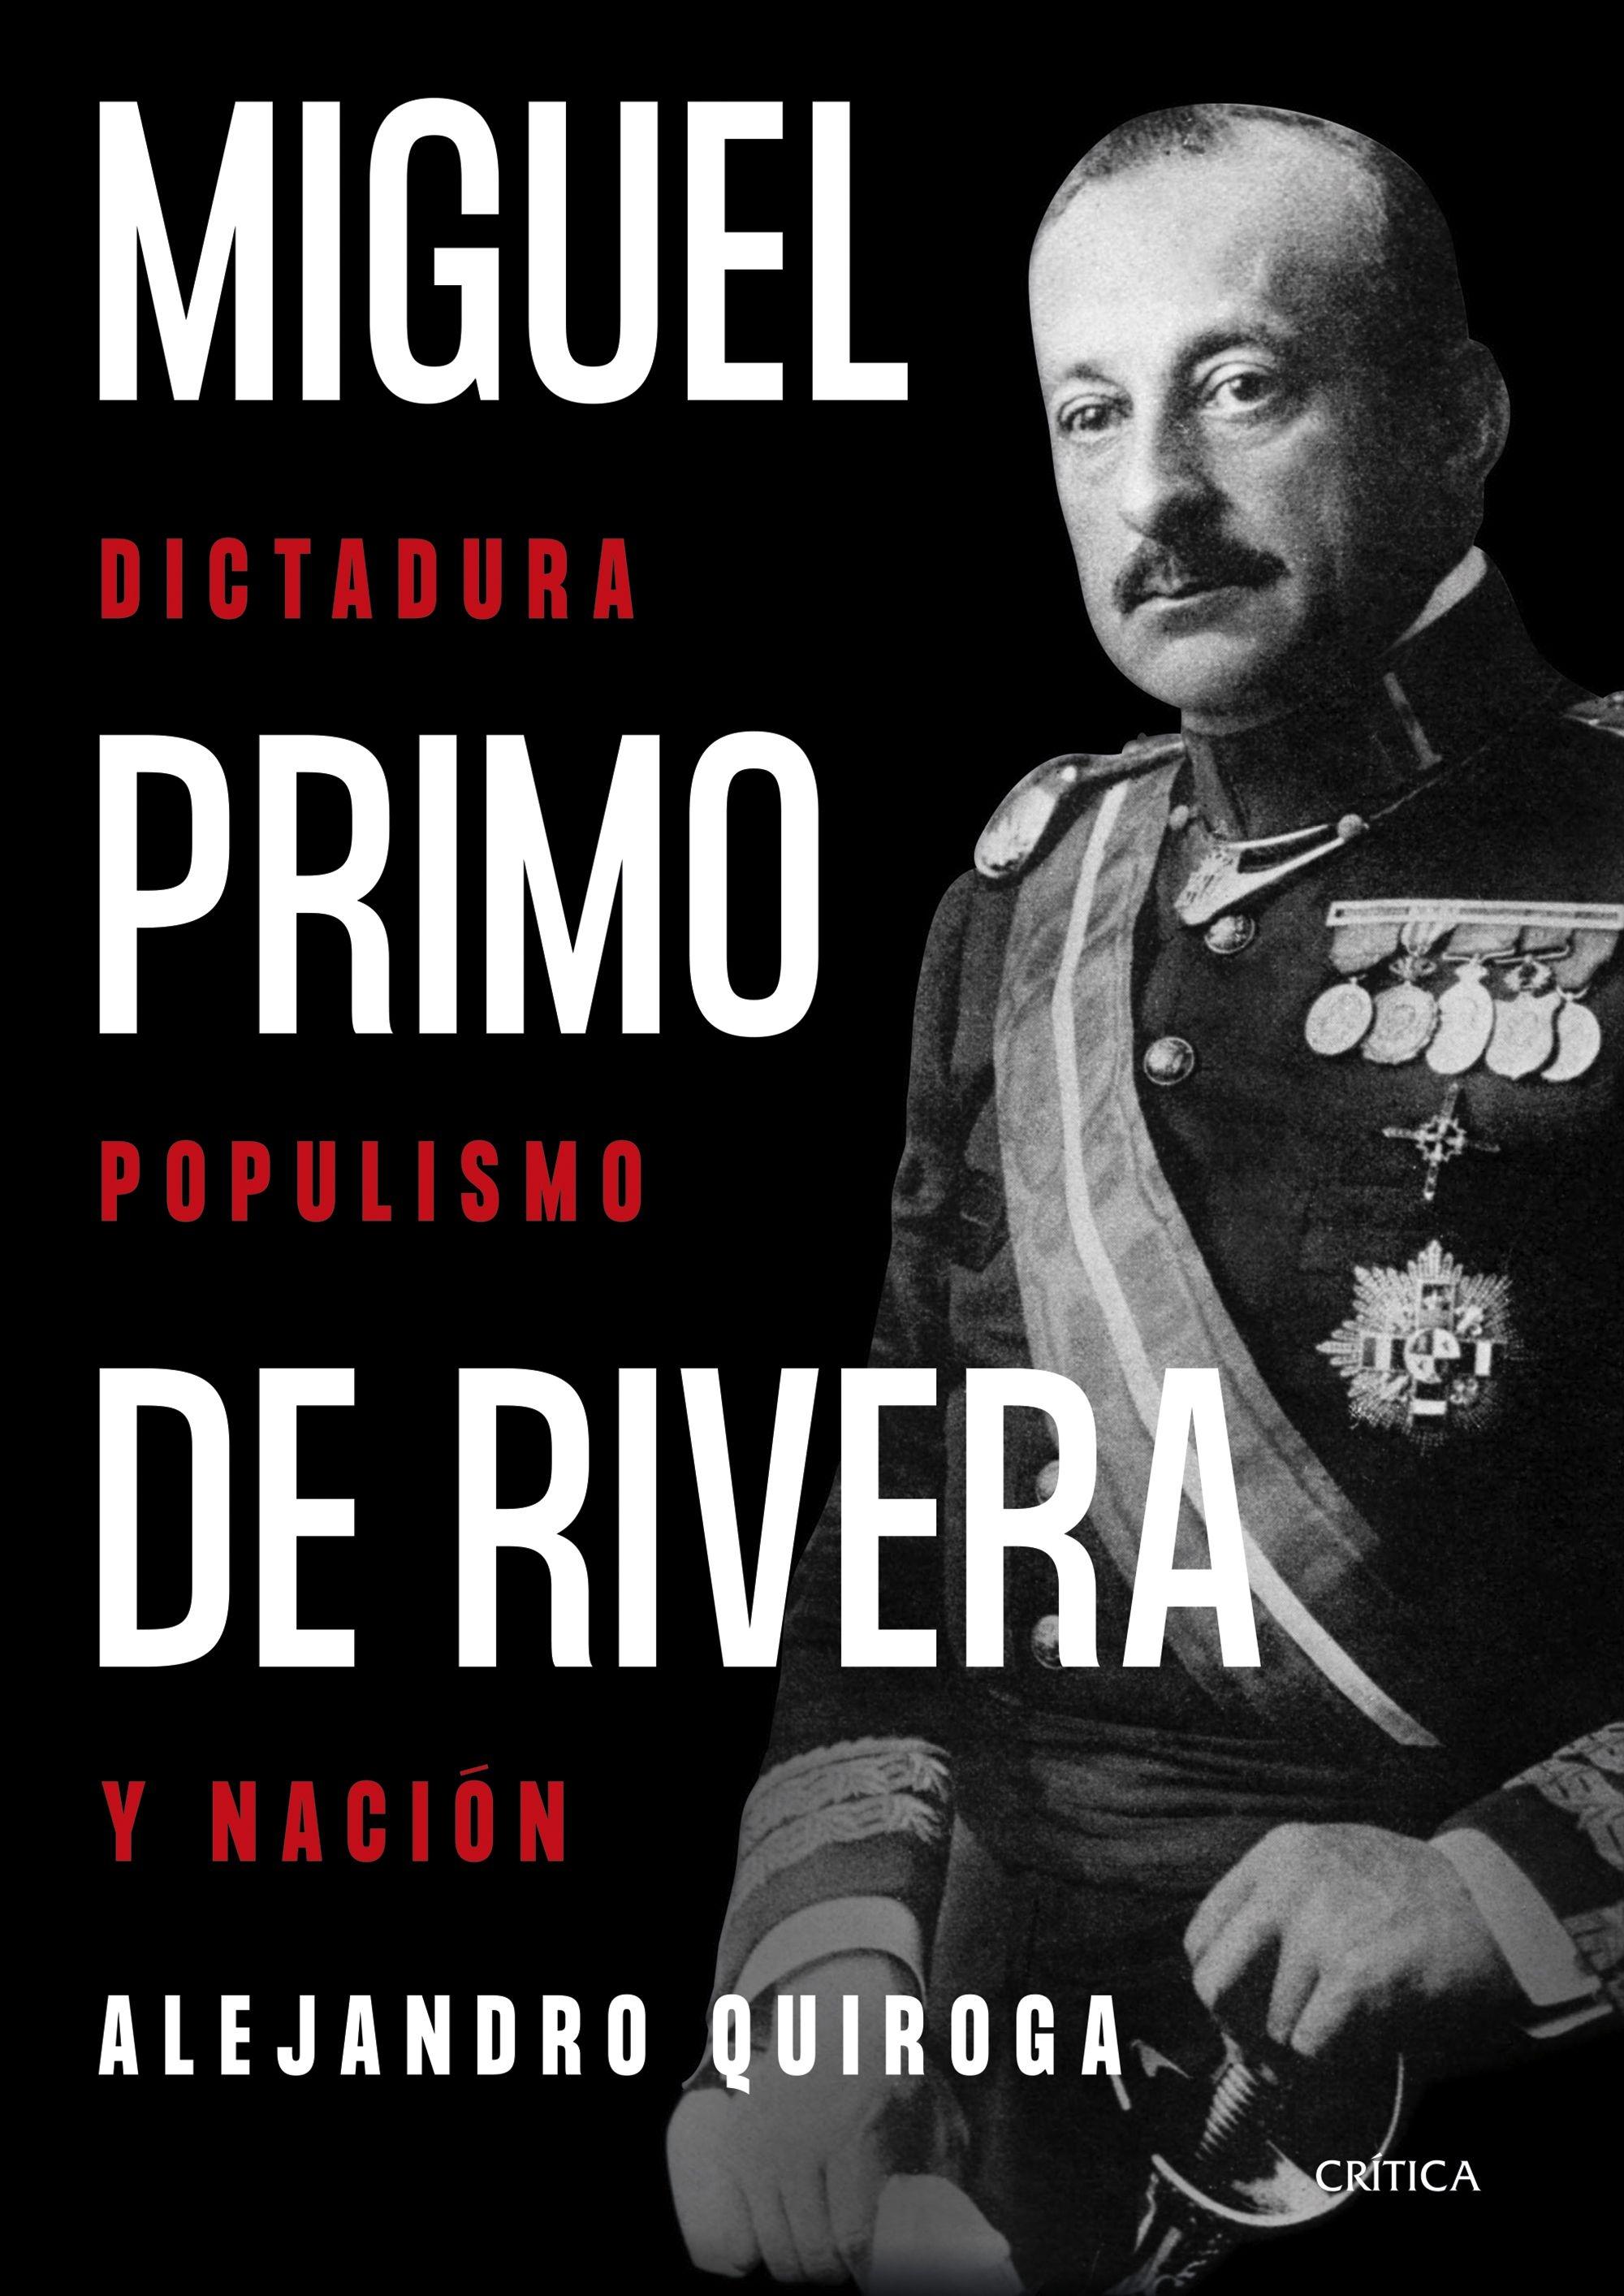 Miguel Primo de Rivera "Dictadura, Populismo y Nación". 